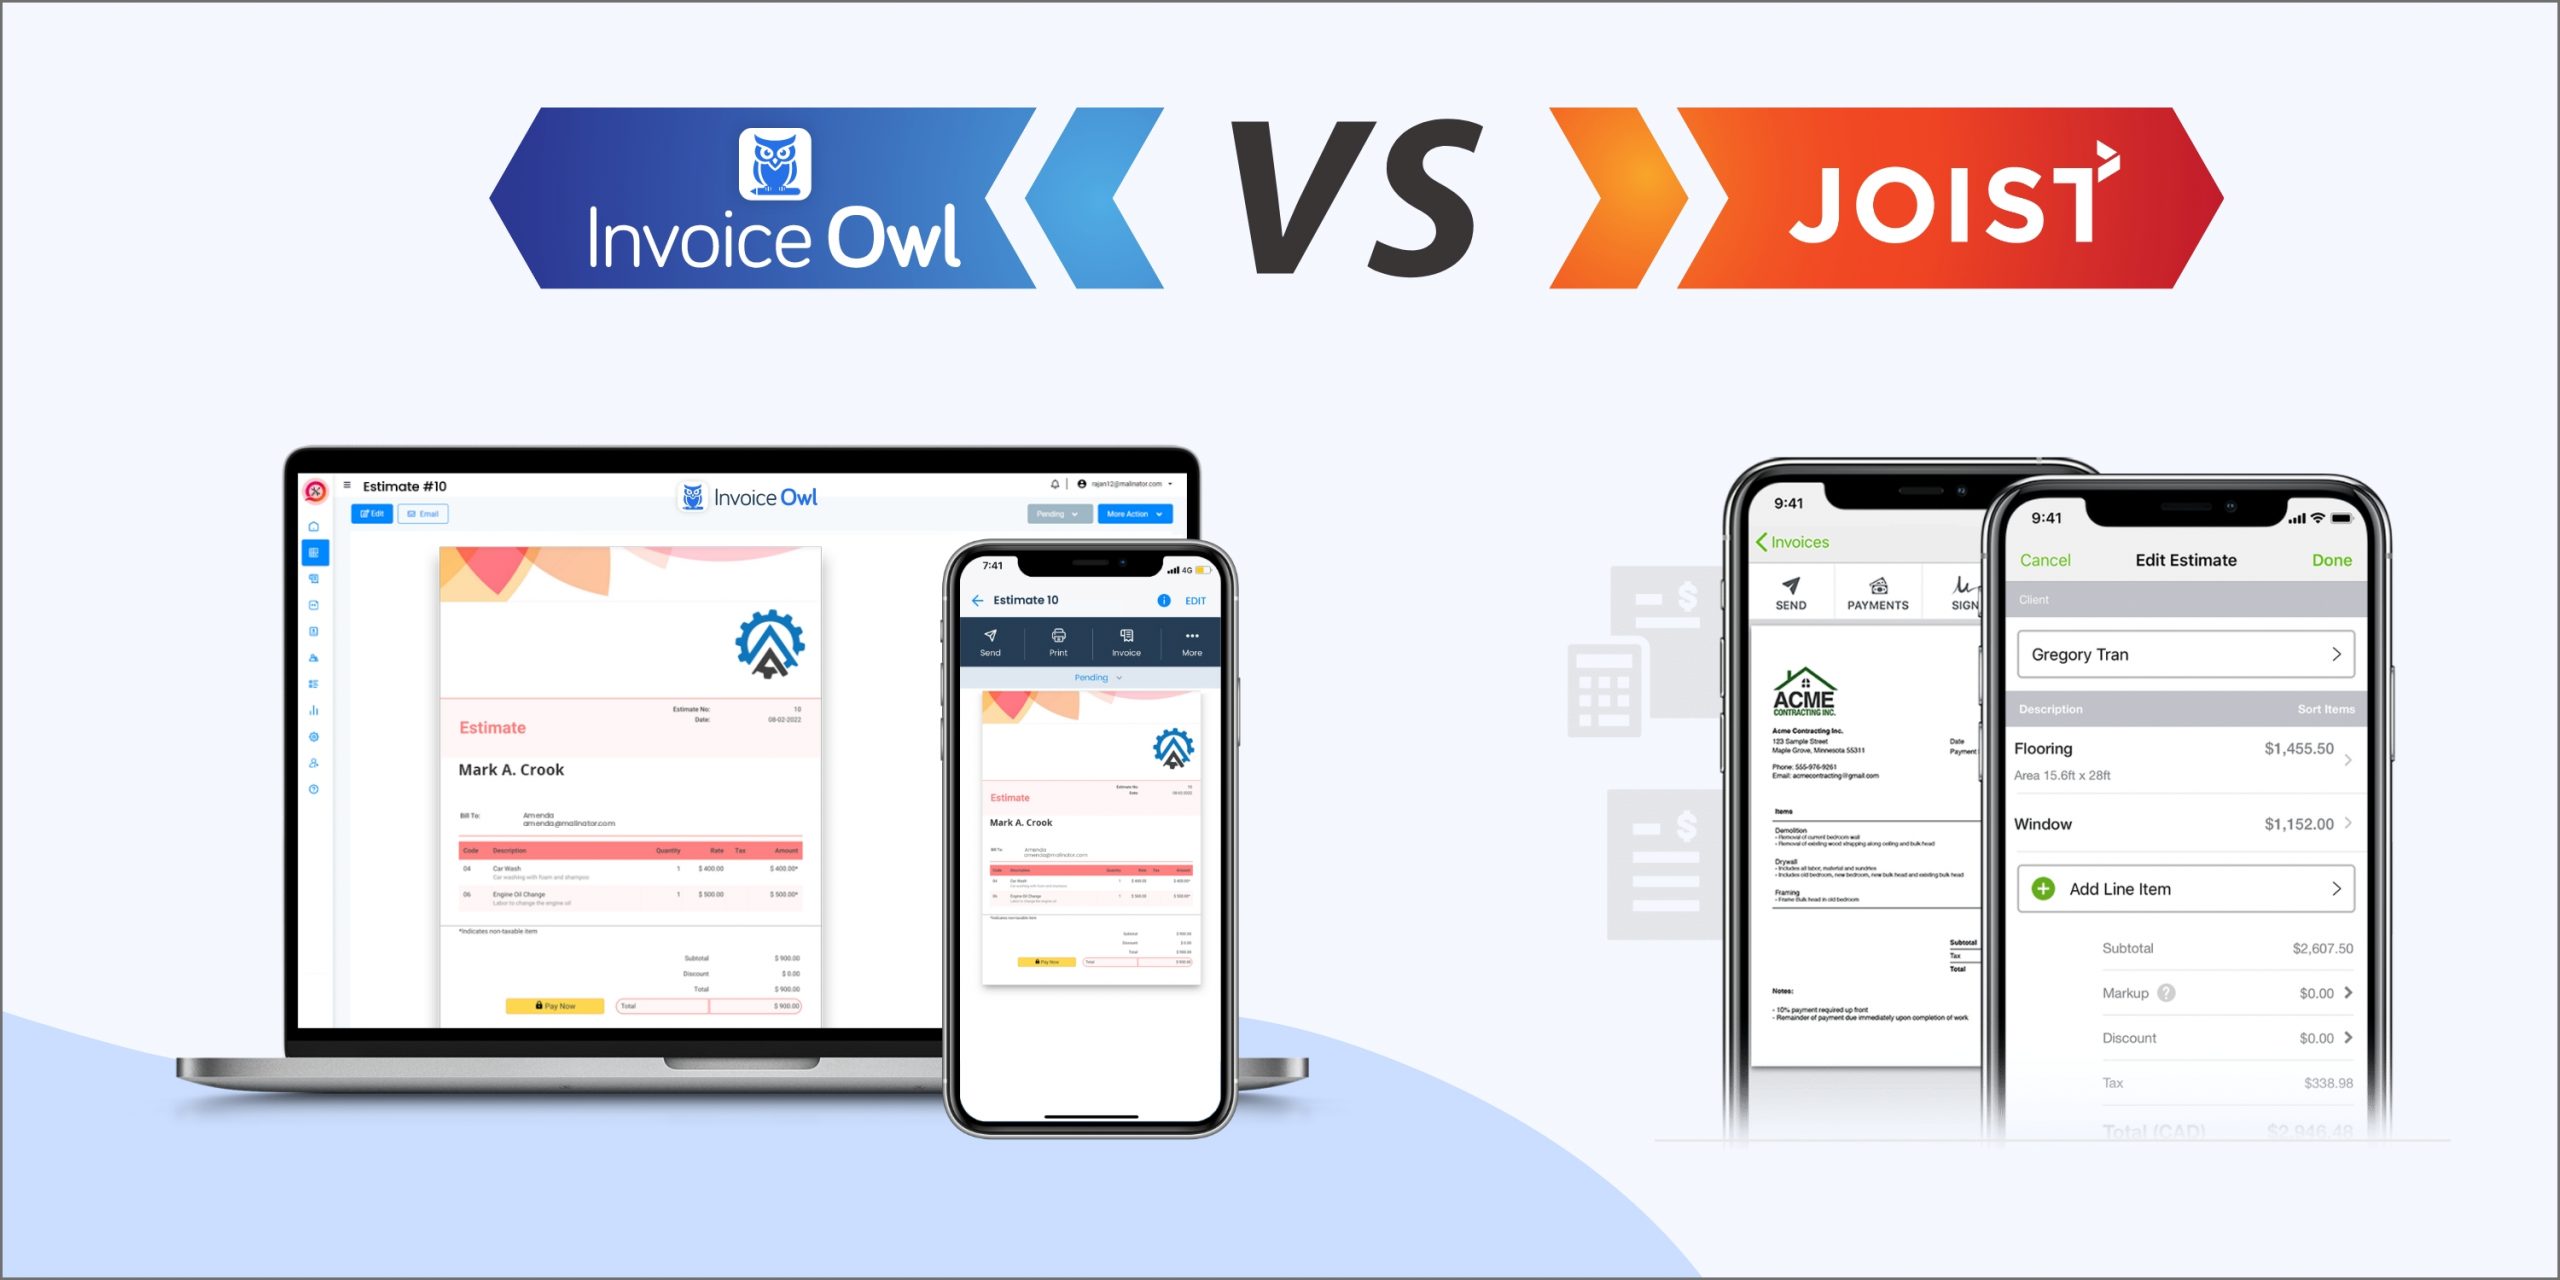 InvoiceOwl vs joist